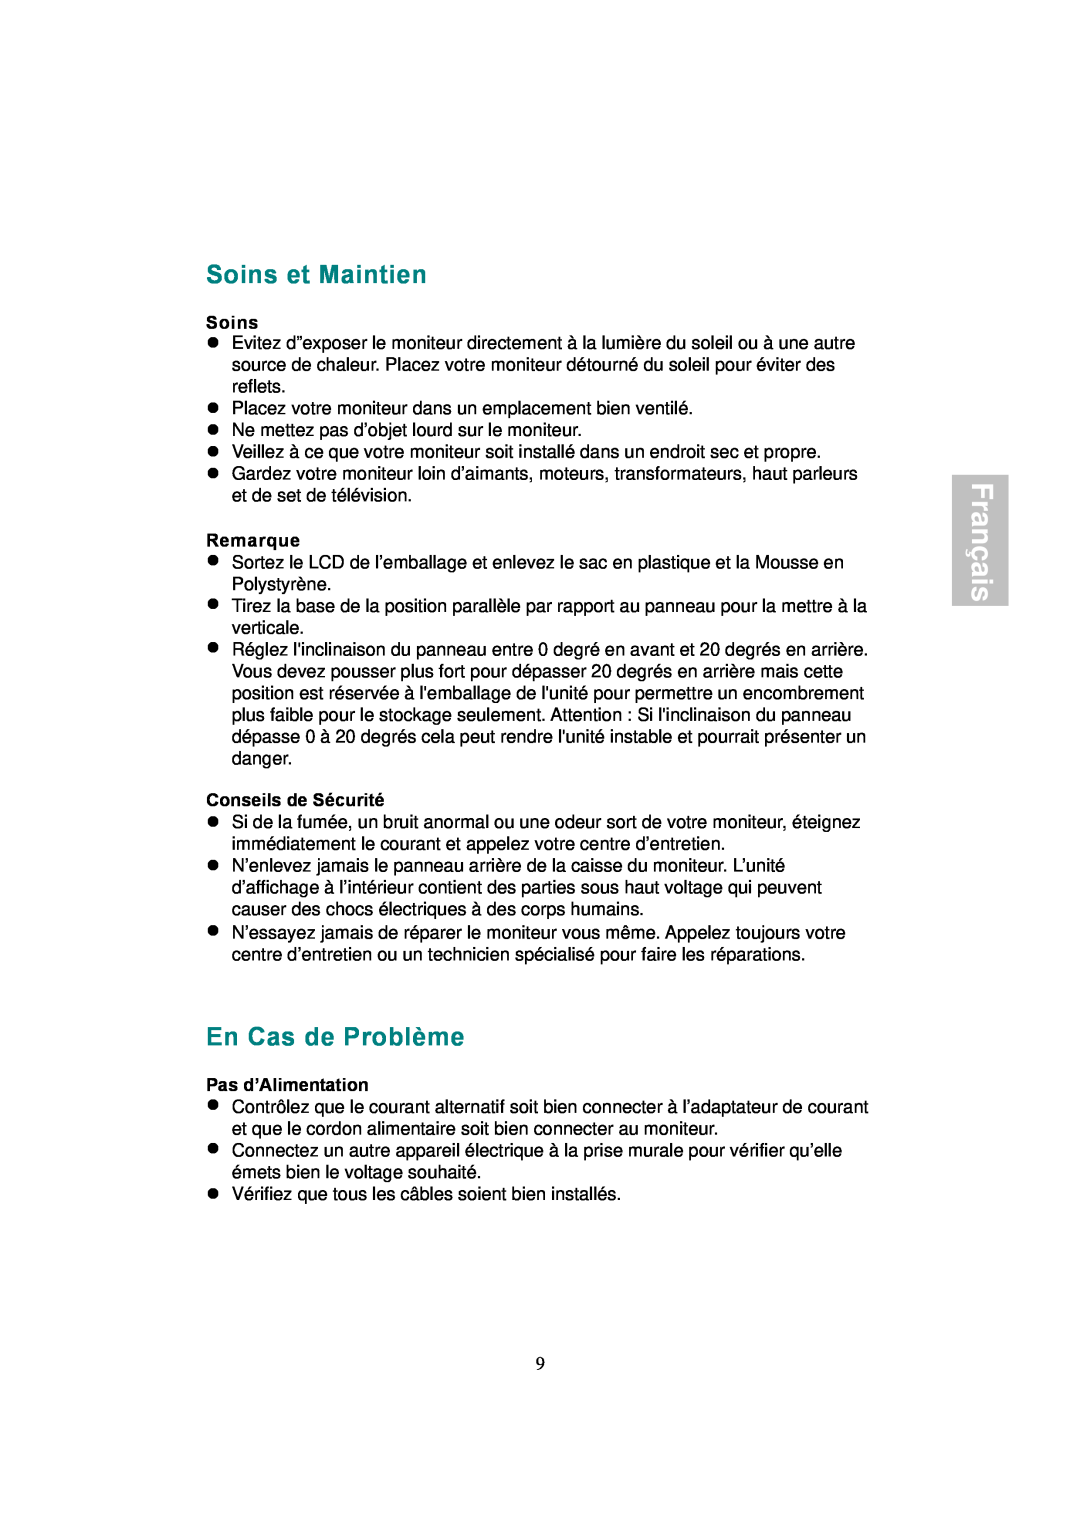 AOC 177S manual Soins et Maintien, En Cas de Problème, Français, Remarque, Conseils de Sécurité, Pas d’Alimentation 